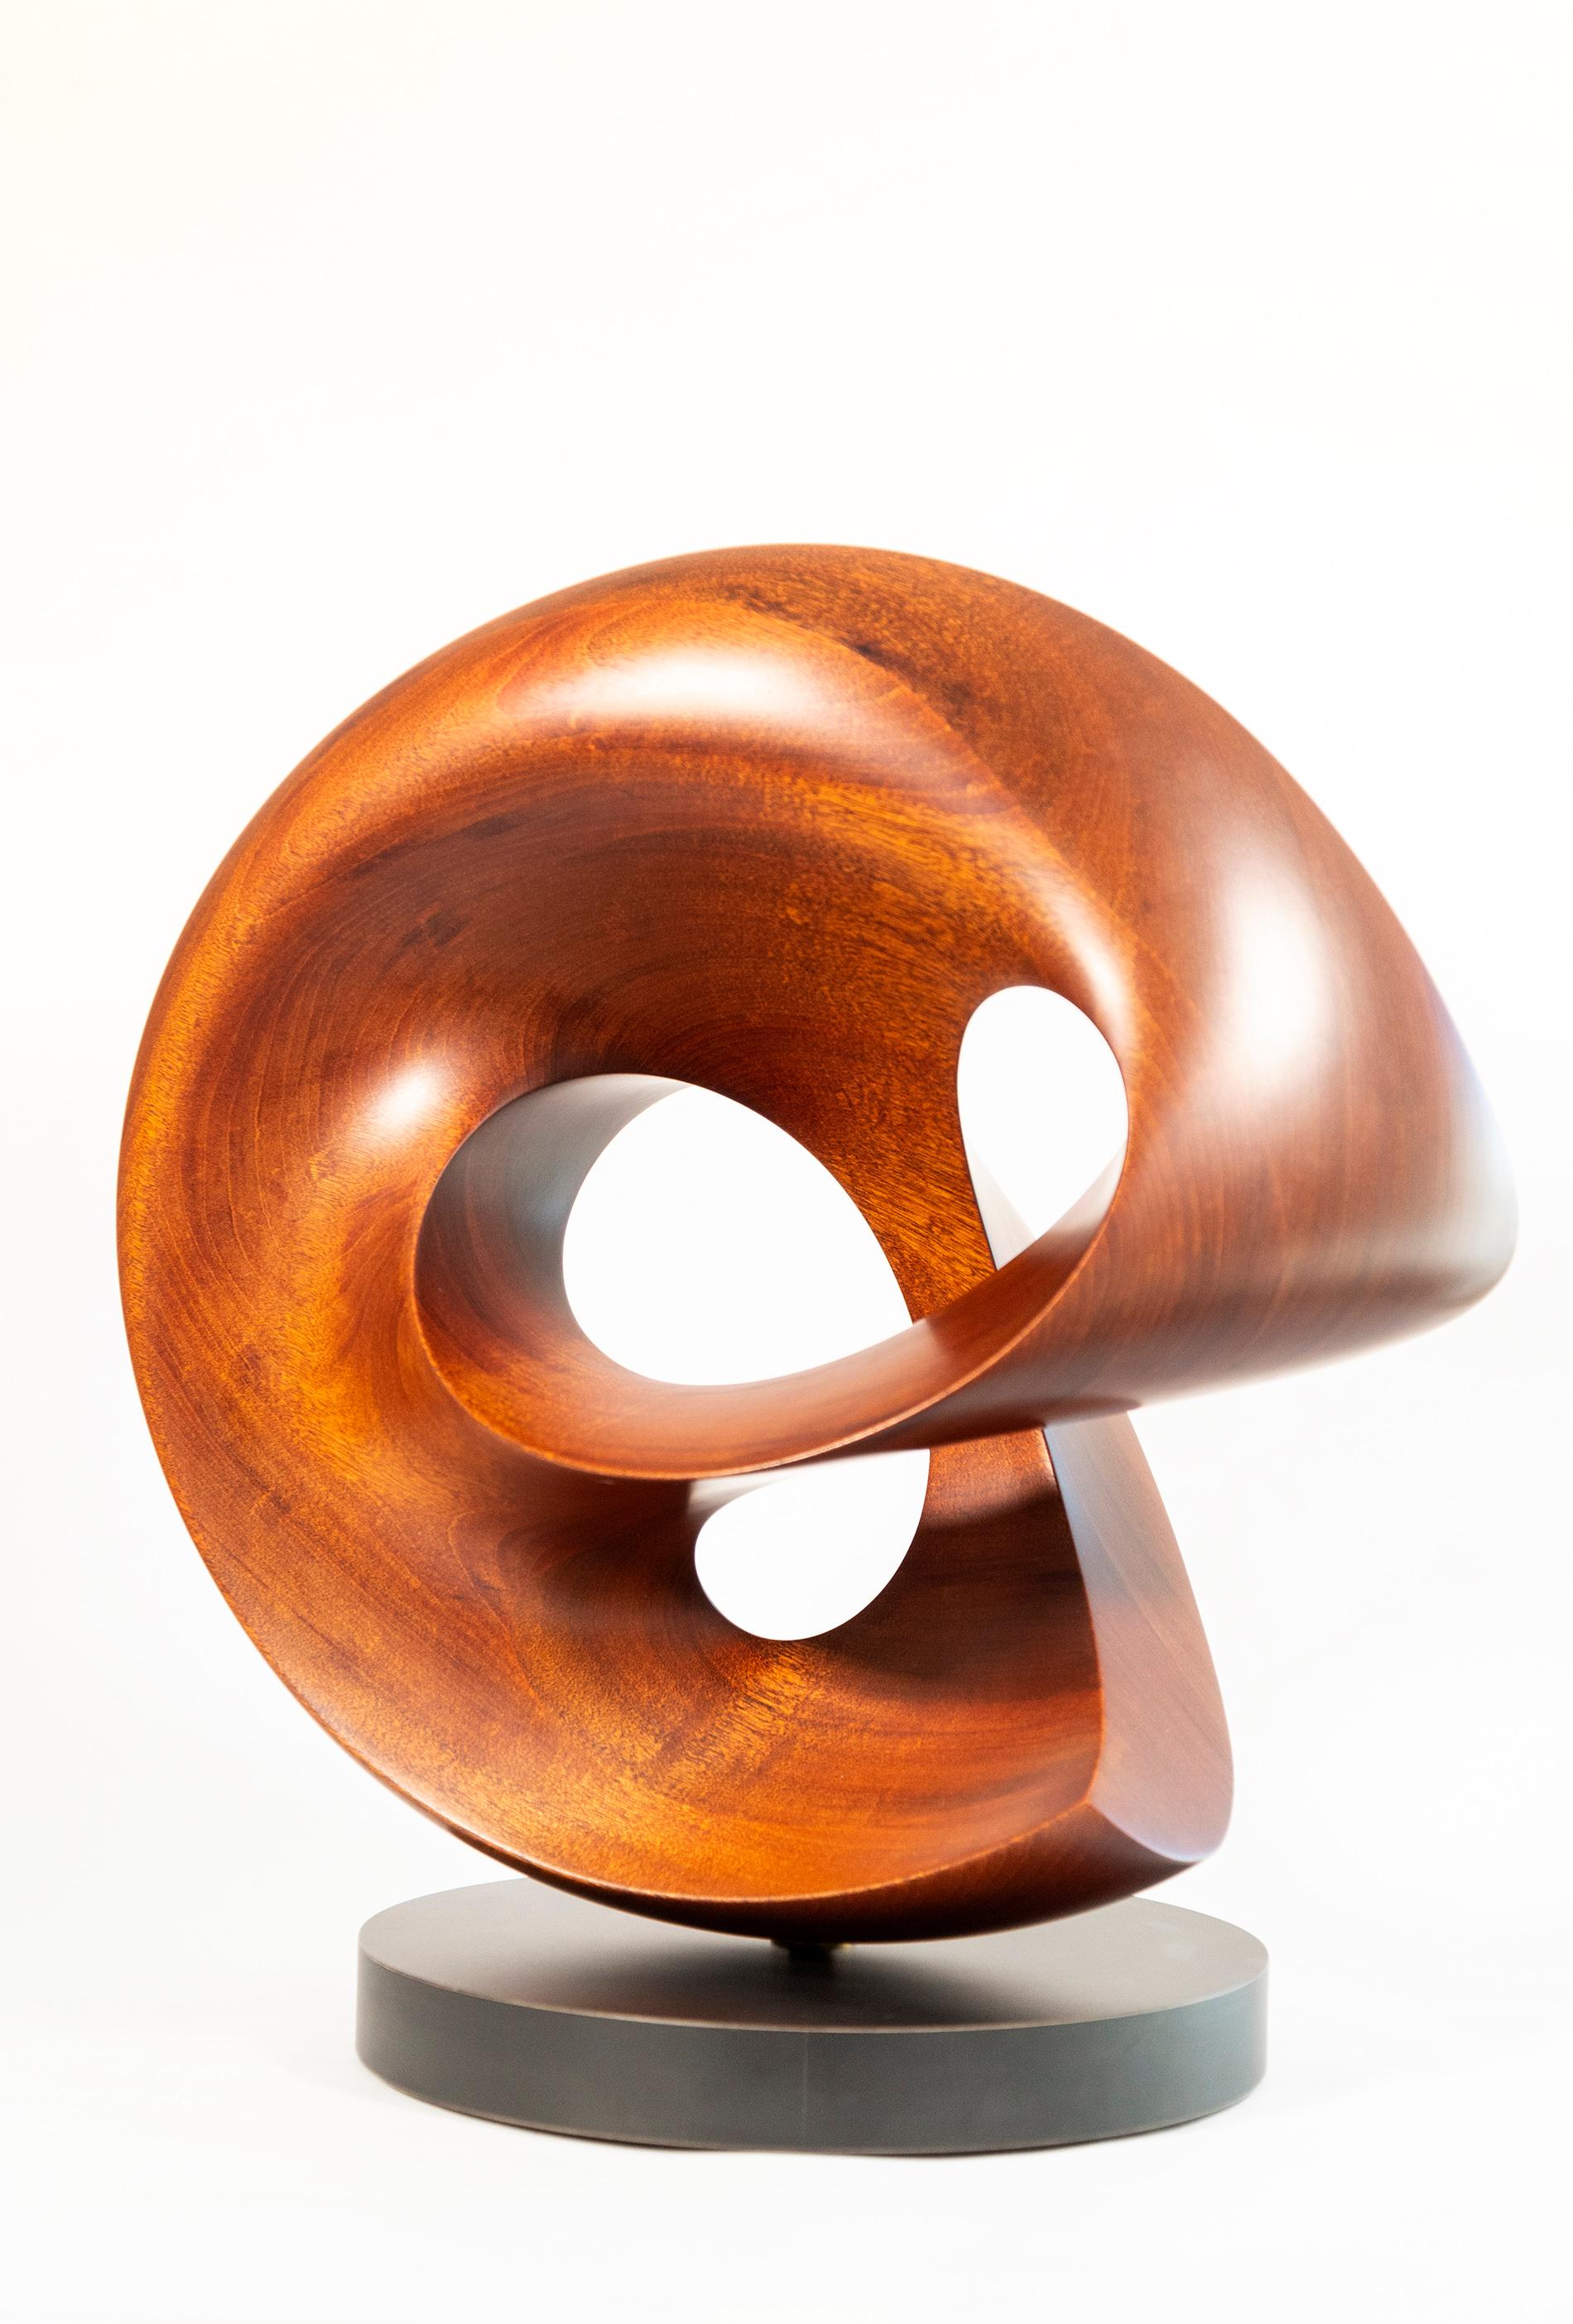 Fanfare - sculpture lisse, polie, abstraite, contemporaine, sculptée en acajou - Sculpture de David Chamberlain